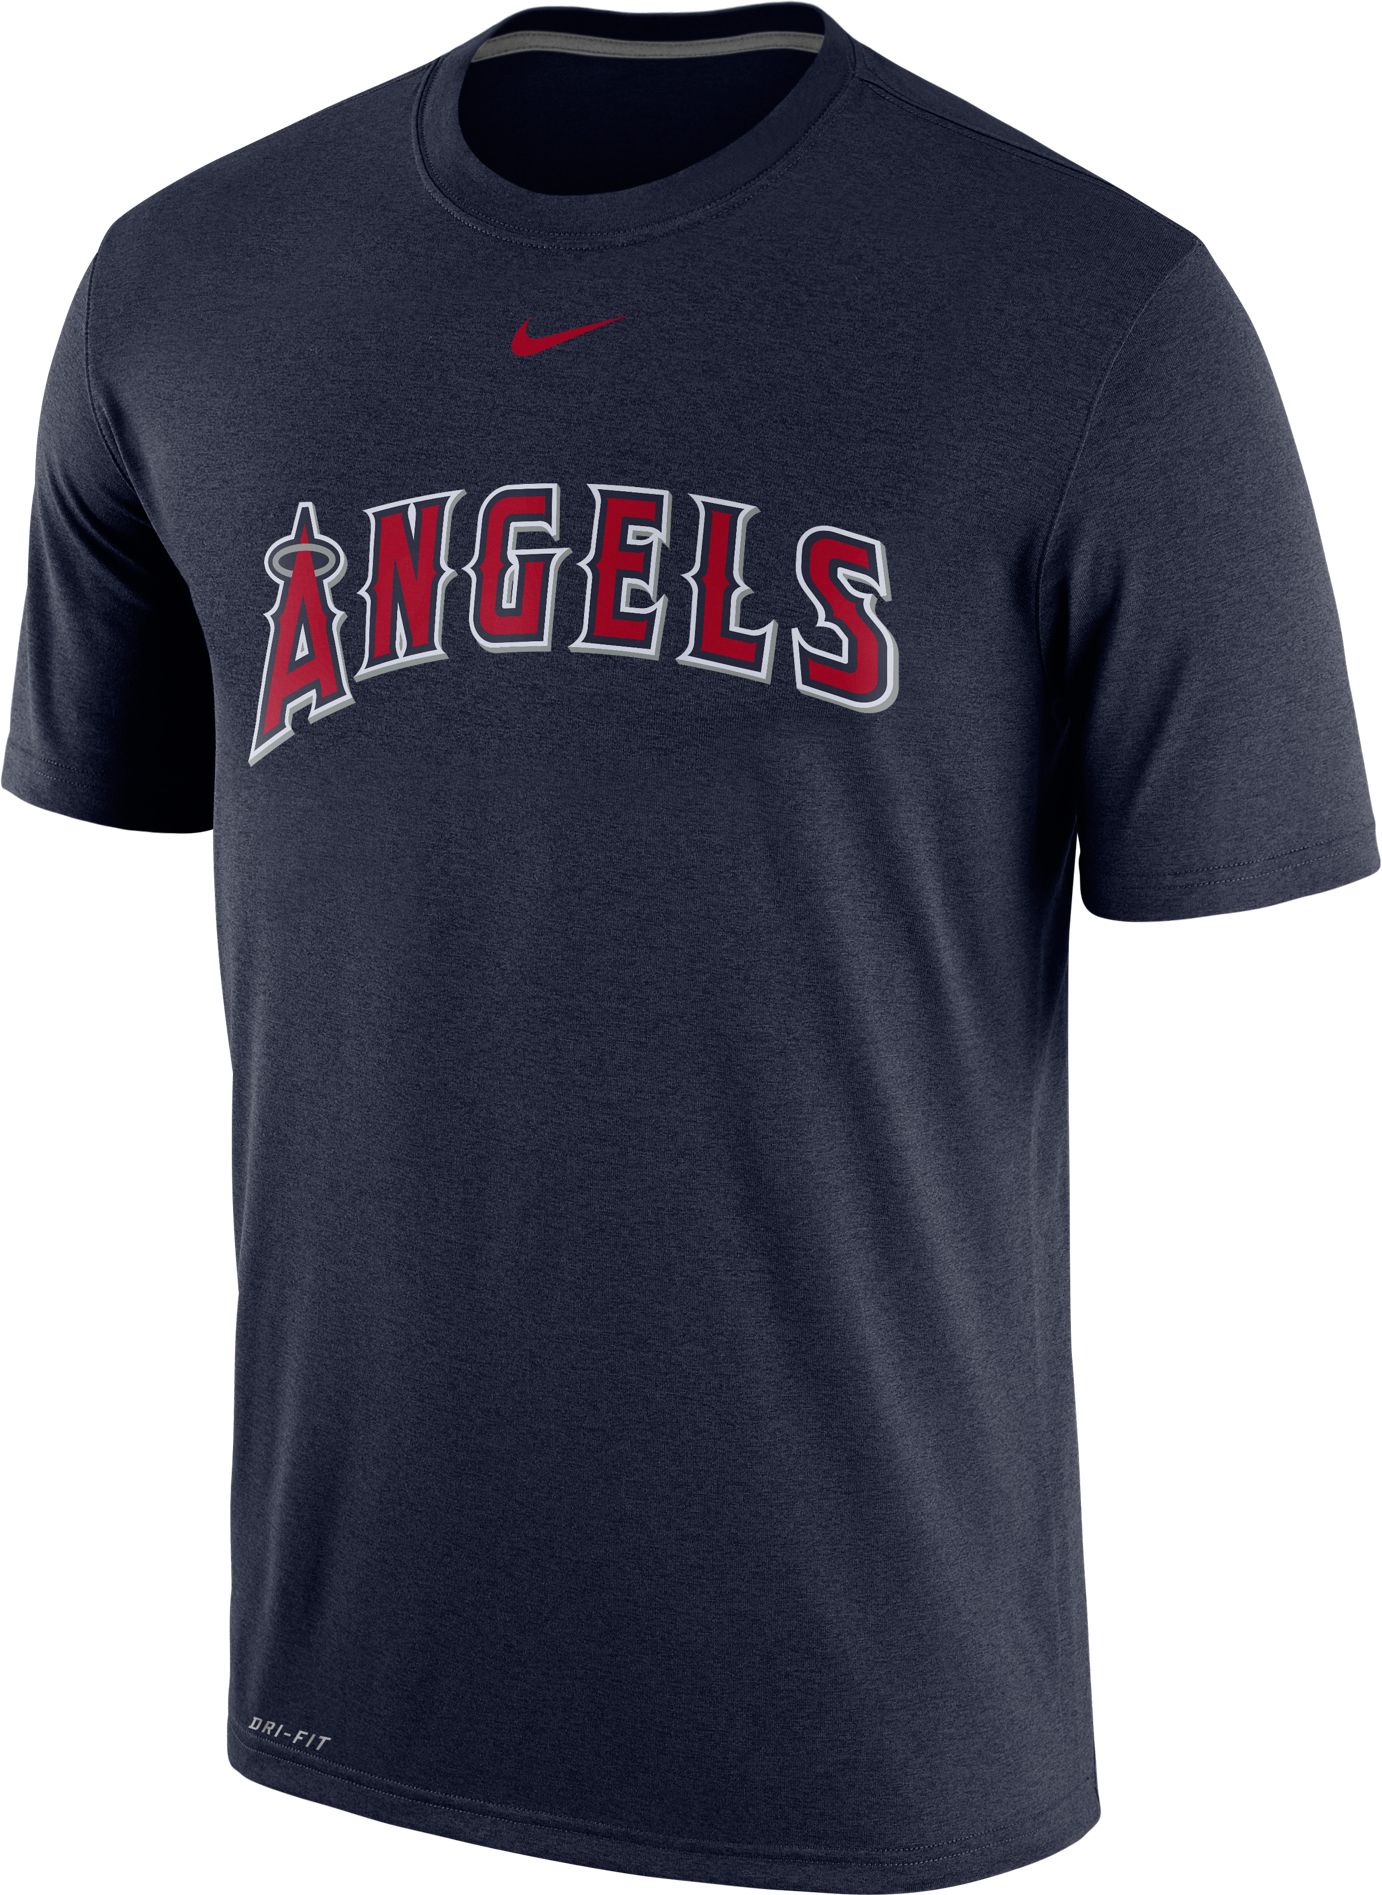 mens angels baseball shirt